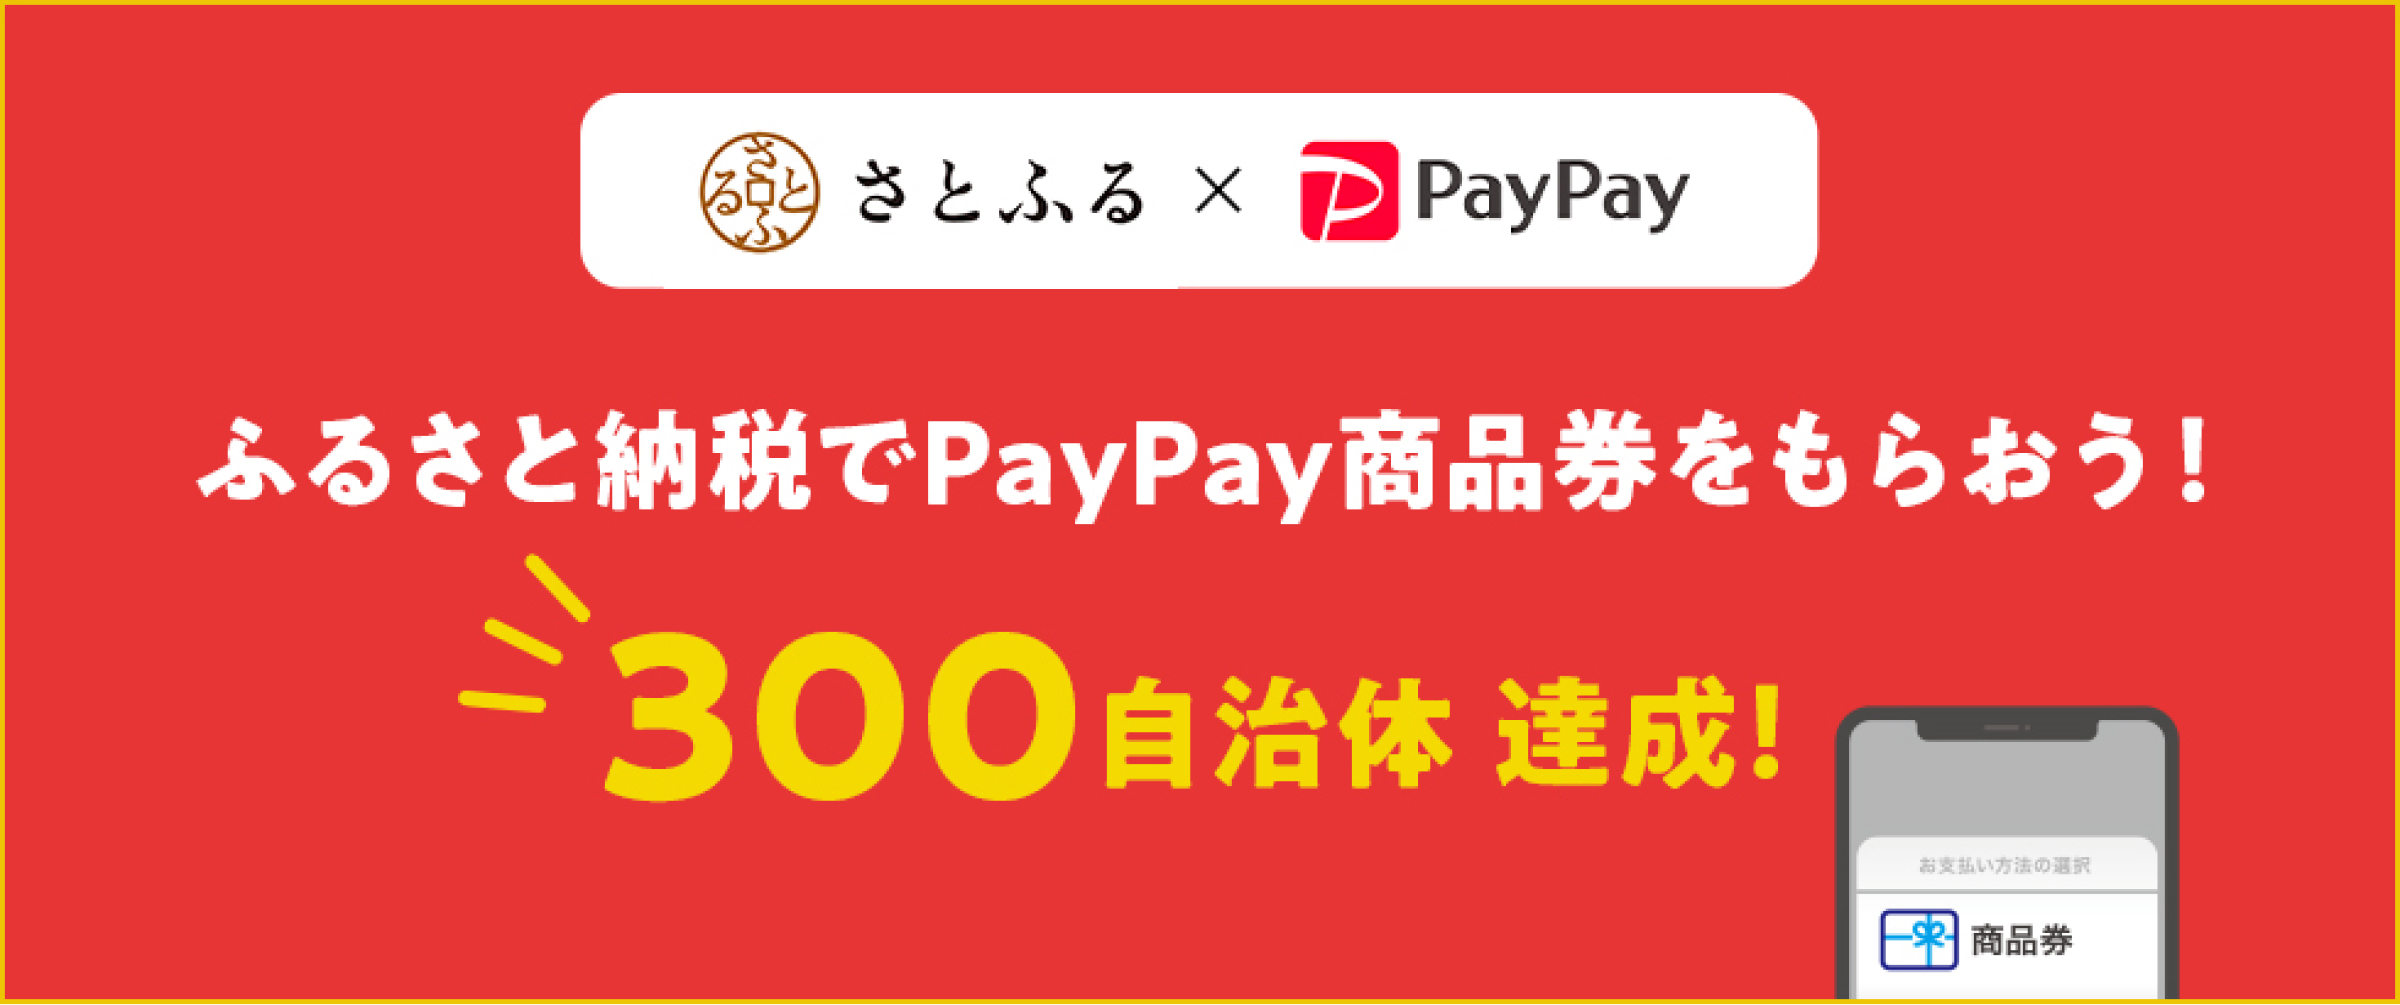 さとふる×PayPay、新サービス「PayPay商品券」が全国327自治体で導入